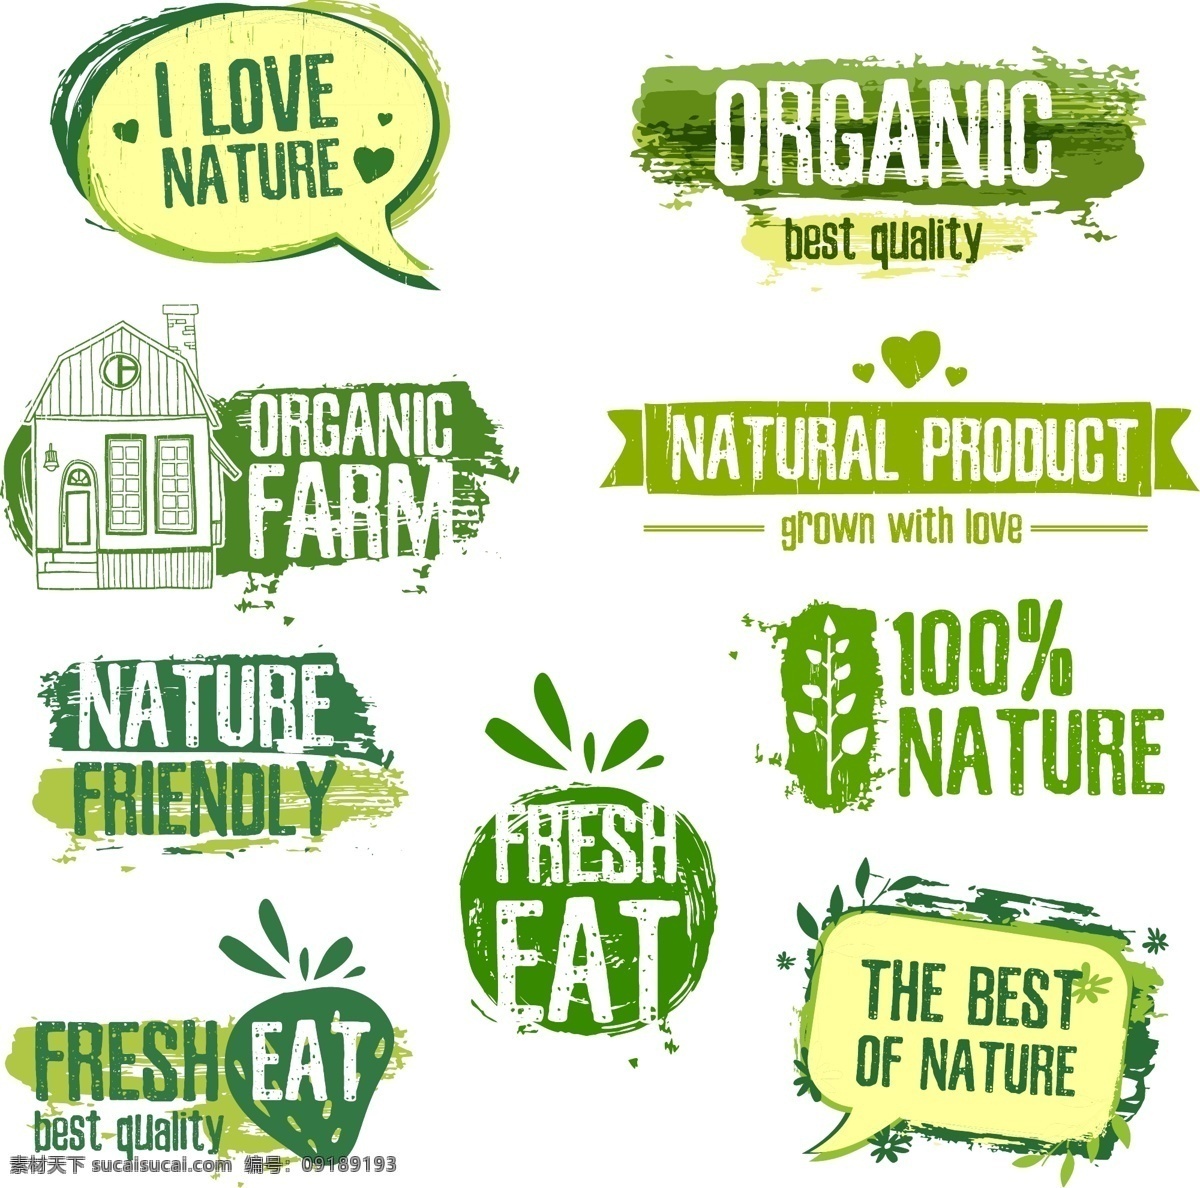 绿色 线条 水彩 边框 对话框 logo 矢 环保 手绘 英文 风格 绿叶 图标 小清新 标志 健康 食品 矢量 圆形 树叶形状 树枝边框